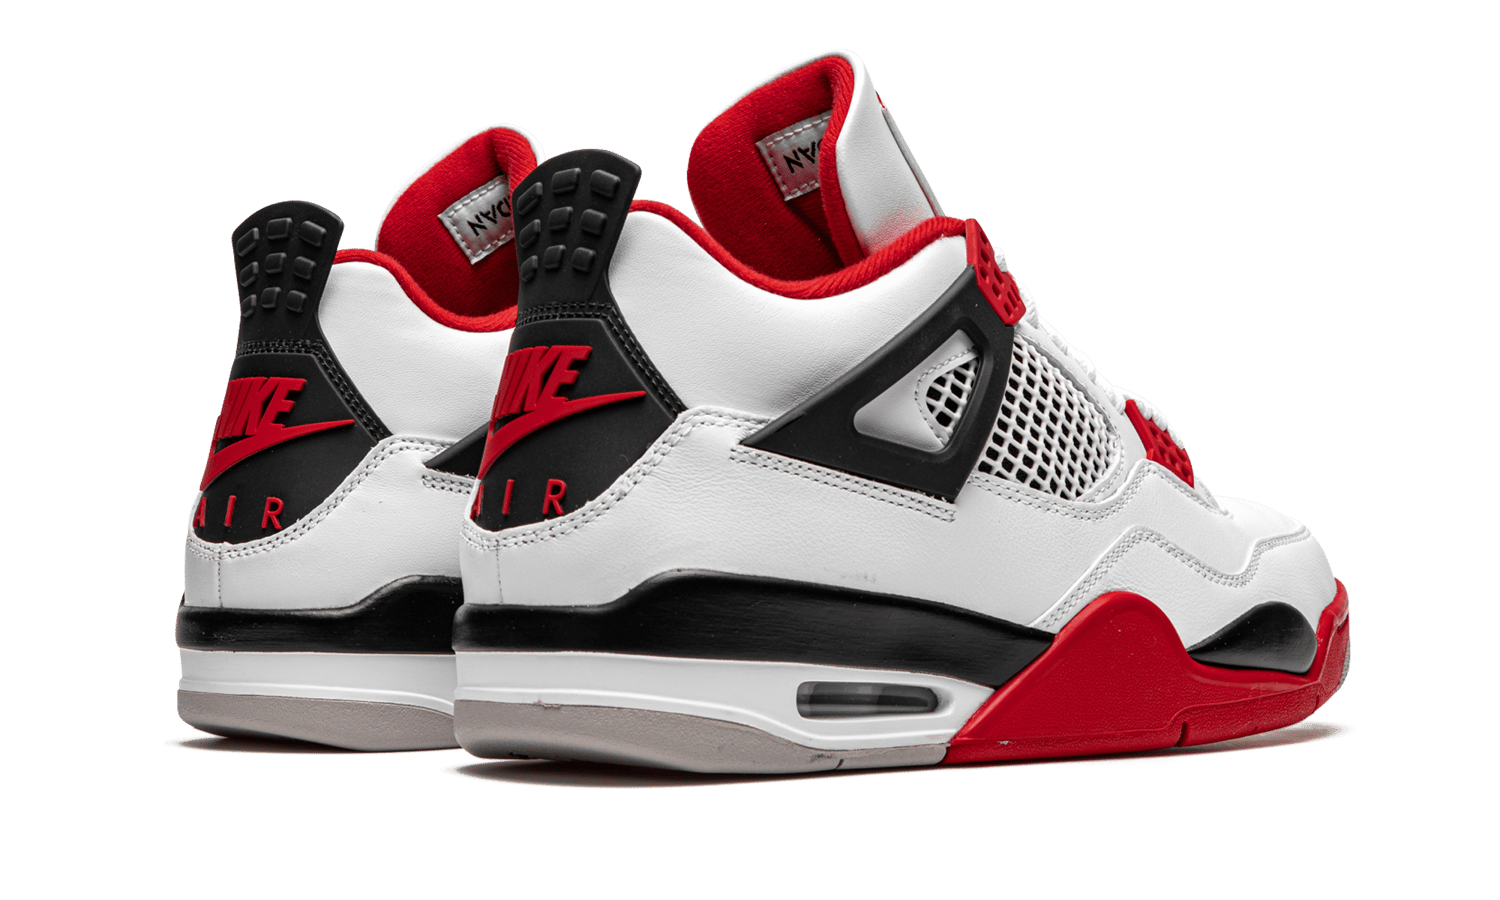 Image of Nike Retro Air Jordan 4 "Fire Red" 